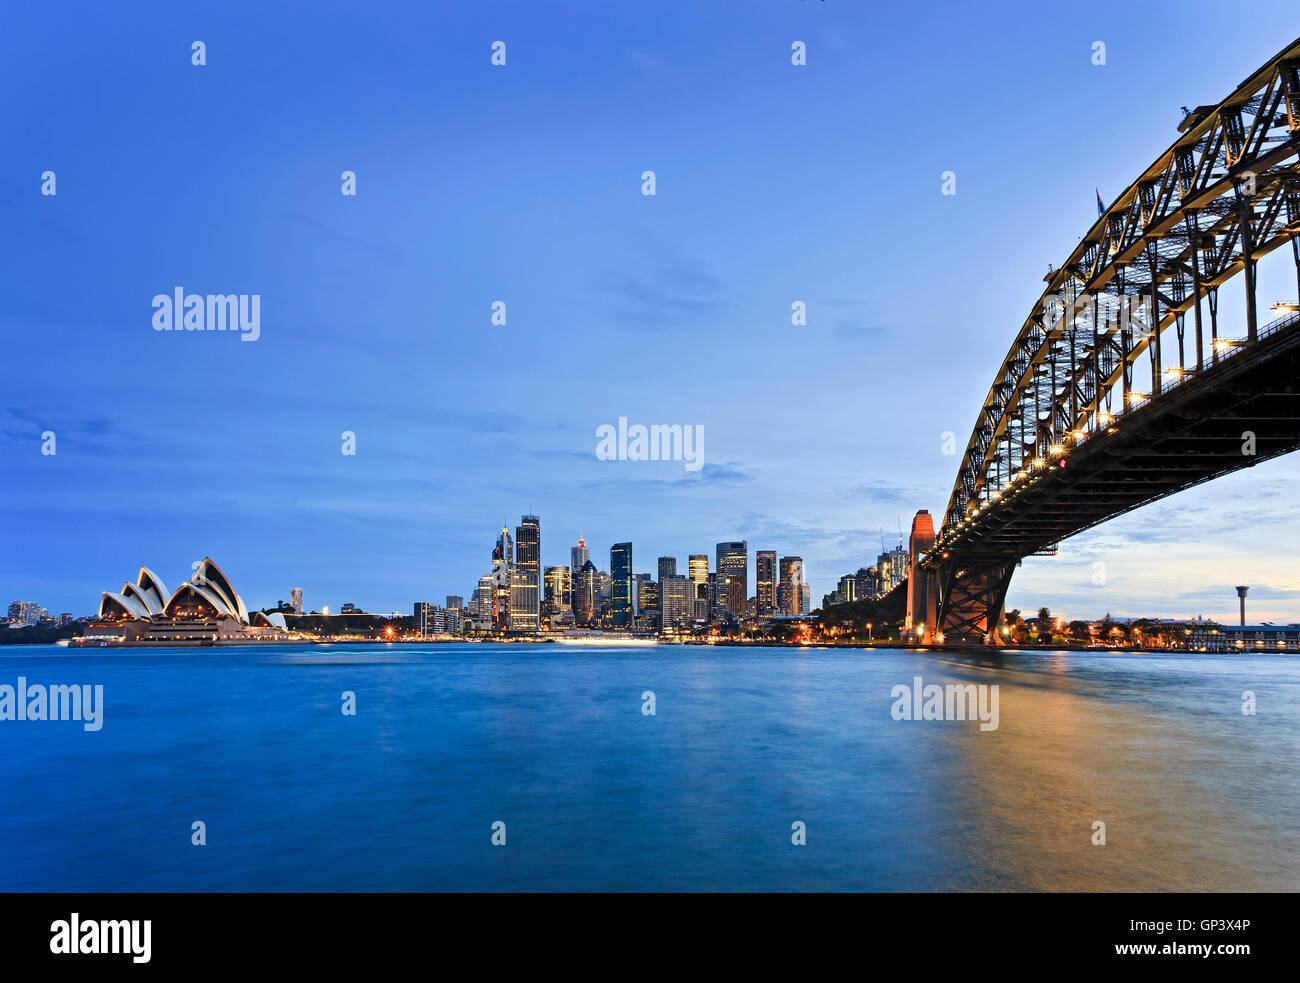 Front de mer de la ville de Sydney CBD autour de Circular Quay avec Harbour Bridge comme vu à travers les eaux bleues de trouble Harbour au coucher du soleil. Banque D'Images